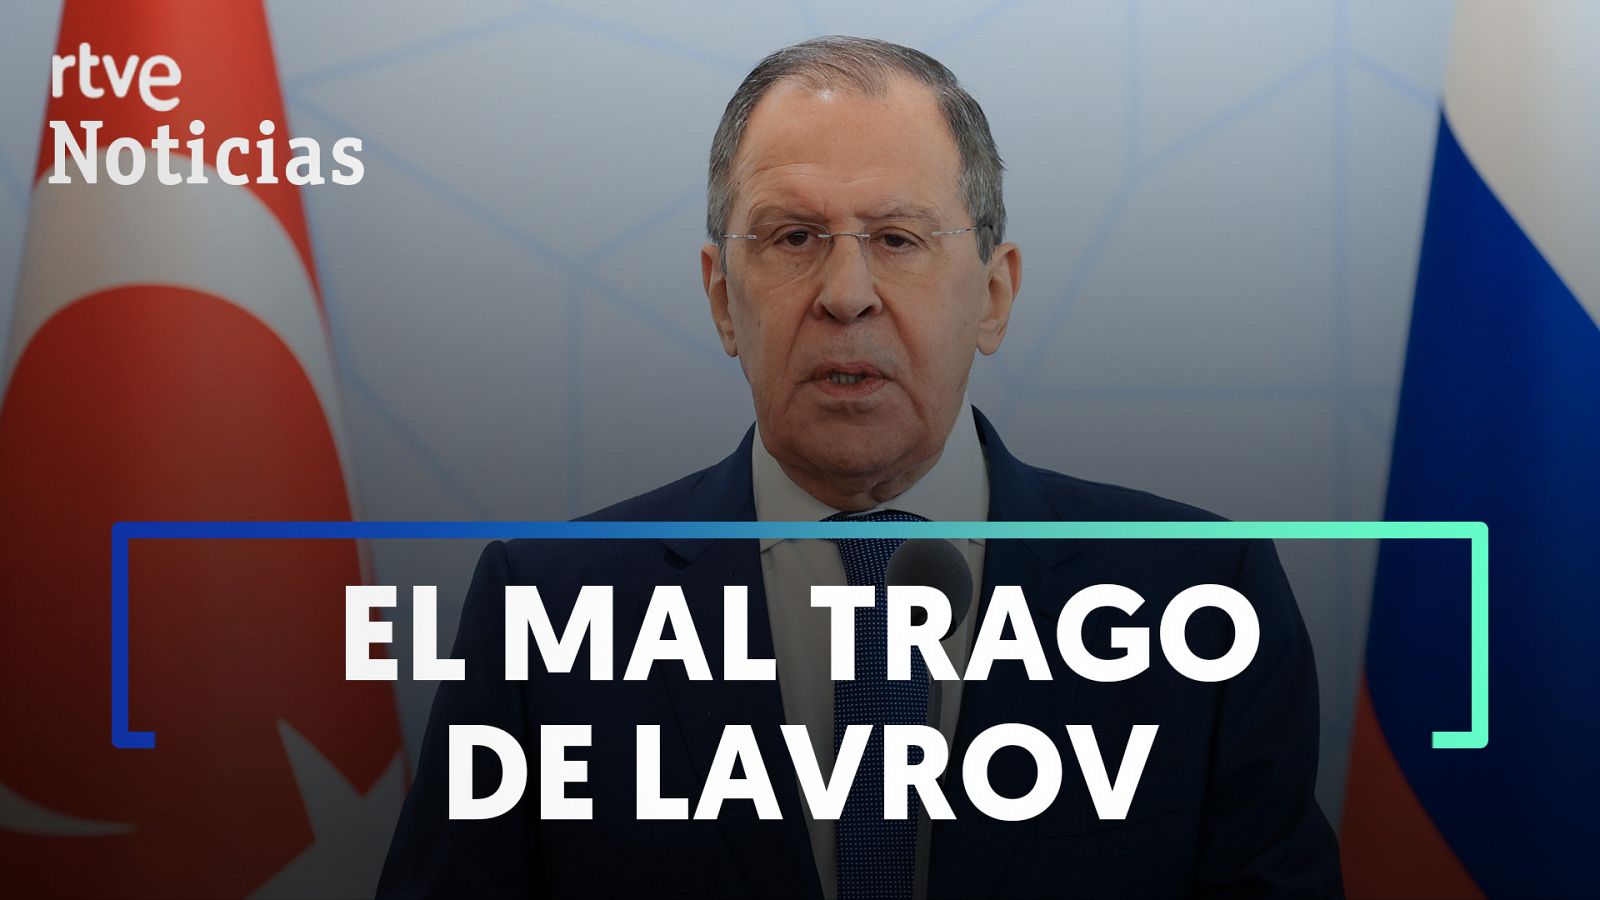 El tenso momento en el que un periodista le pregunta a Lavrov qué ha vendido Rusia de lo robado a Ucrania